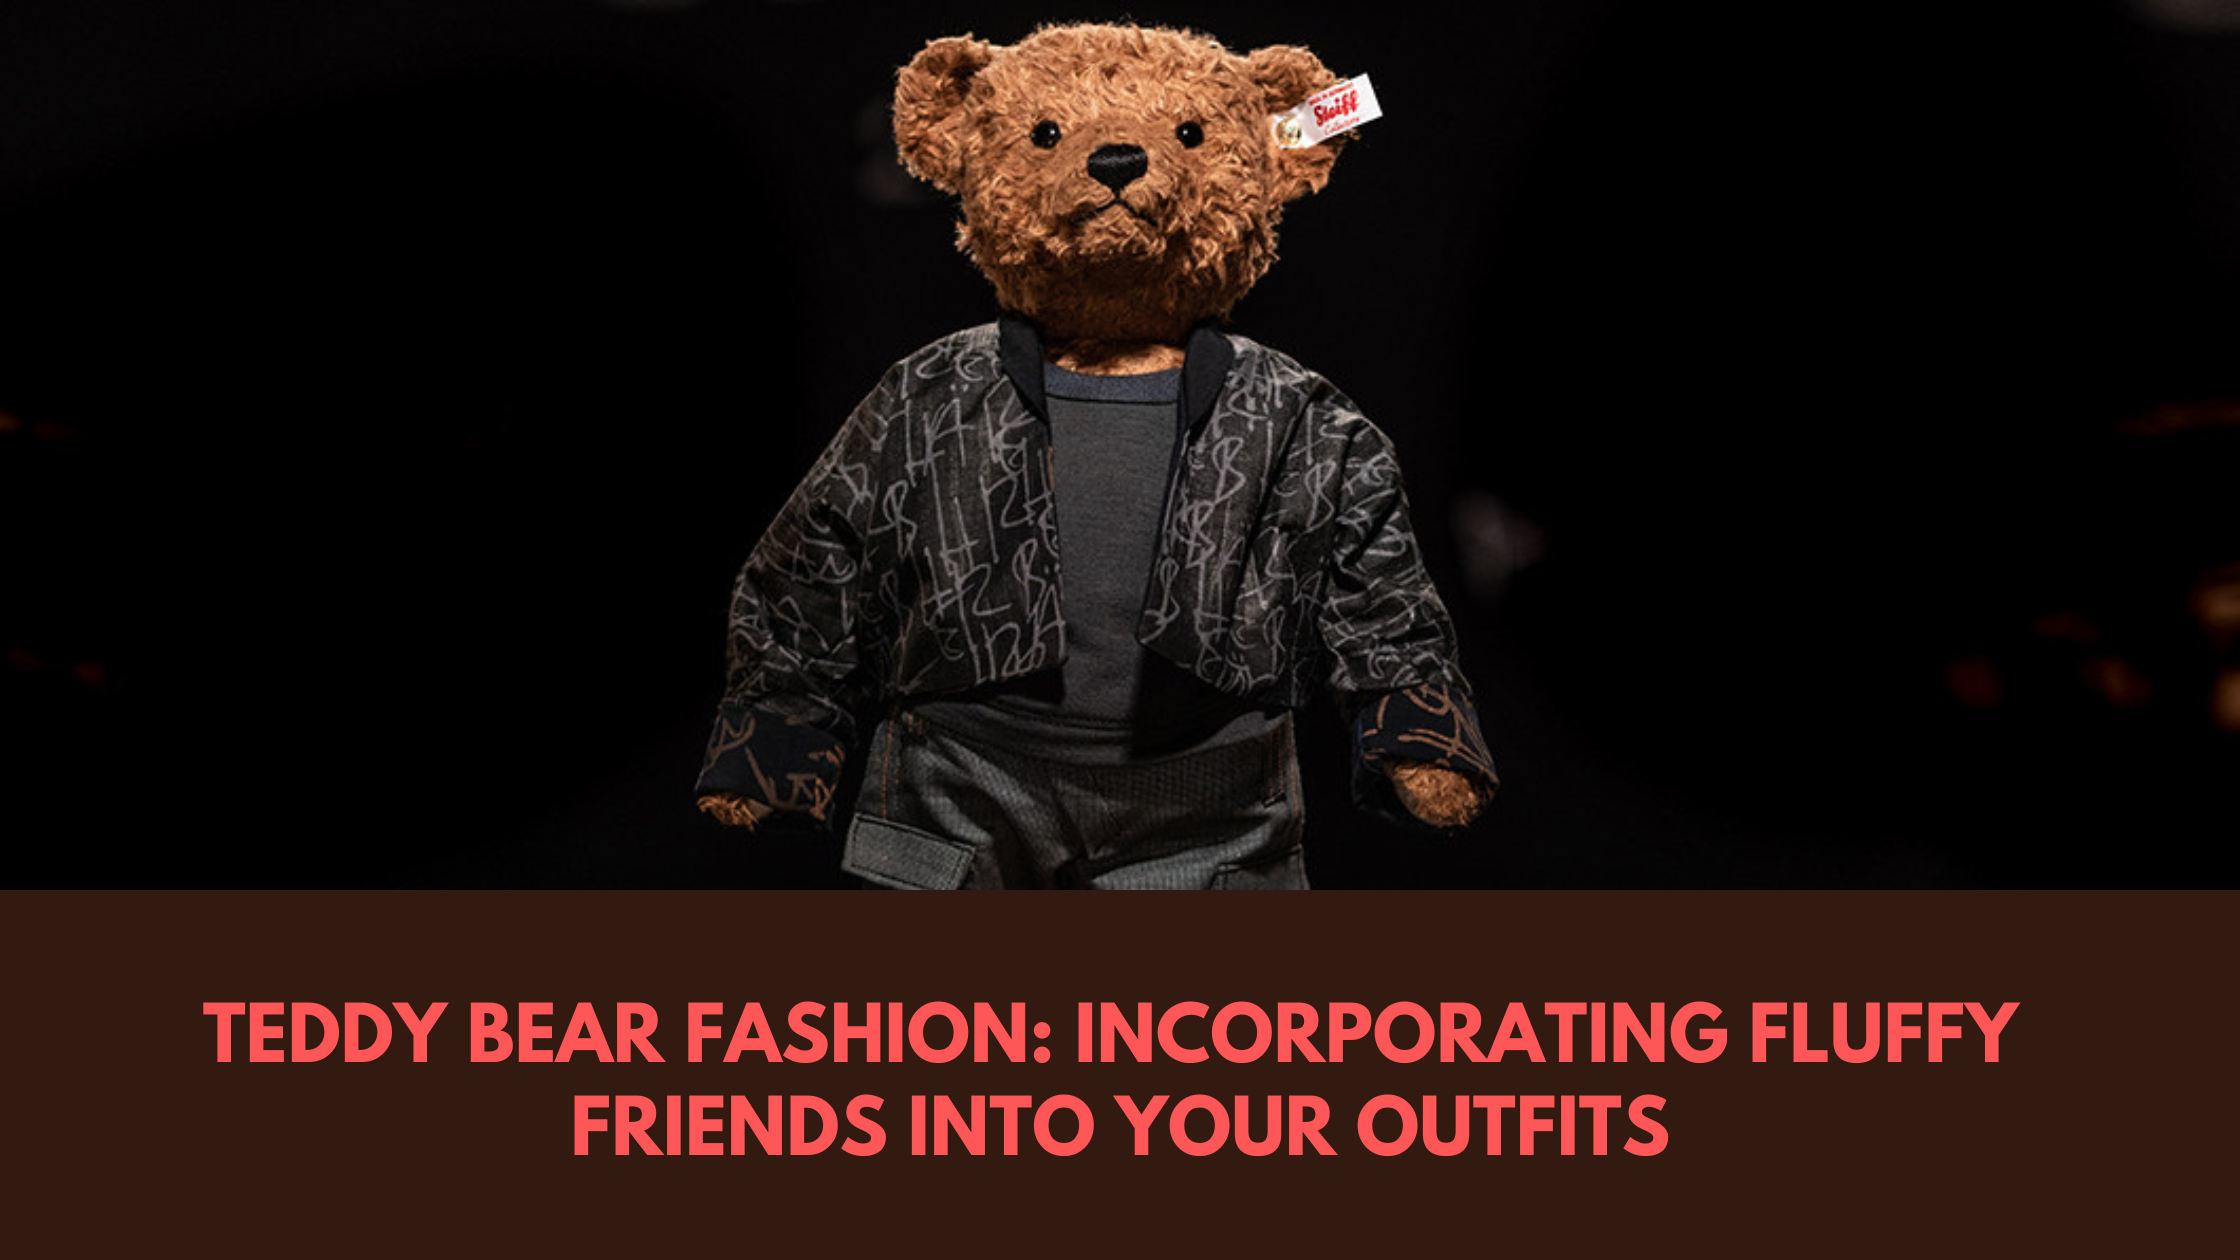 Teddy bear fashion